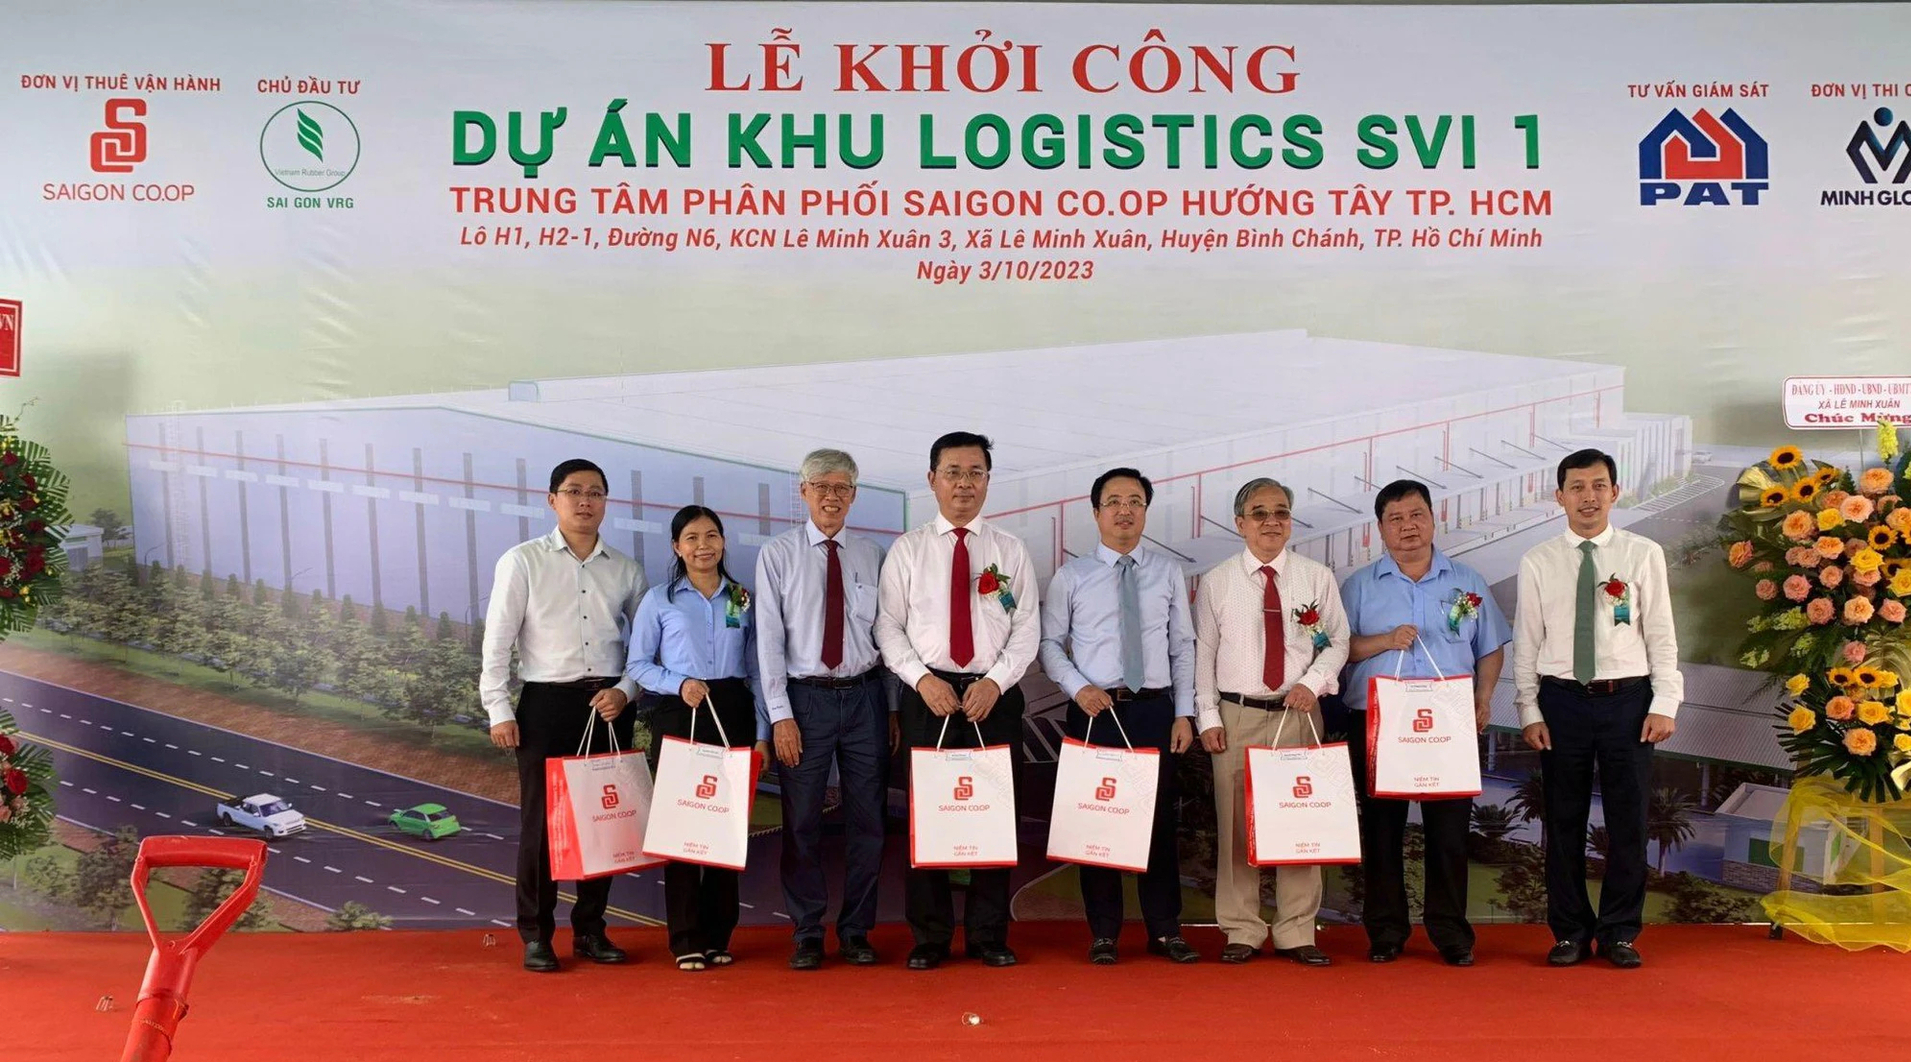 Ông Vũ Anh Khoa, Chủ tịch HĐQT Saigon Co.op (ngoài cùng bên phải) trao quà lưu niệm cho các đại biểu đến dự lễ khởi công. Ảnh: Saigon Co.op.